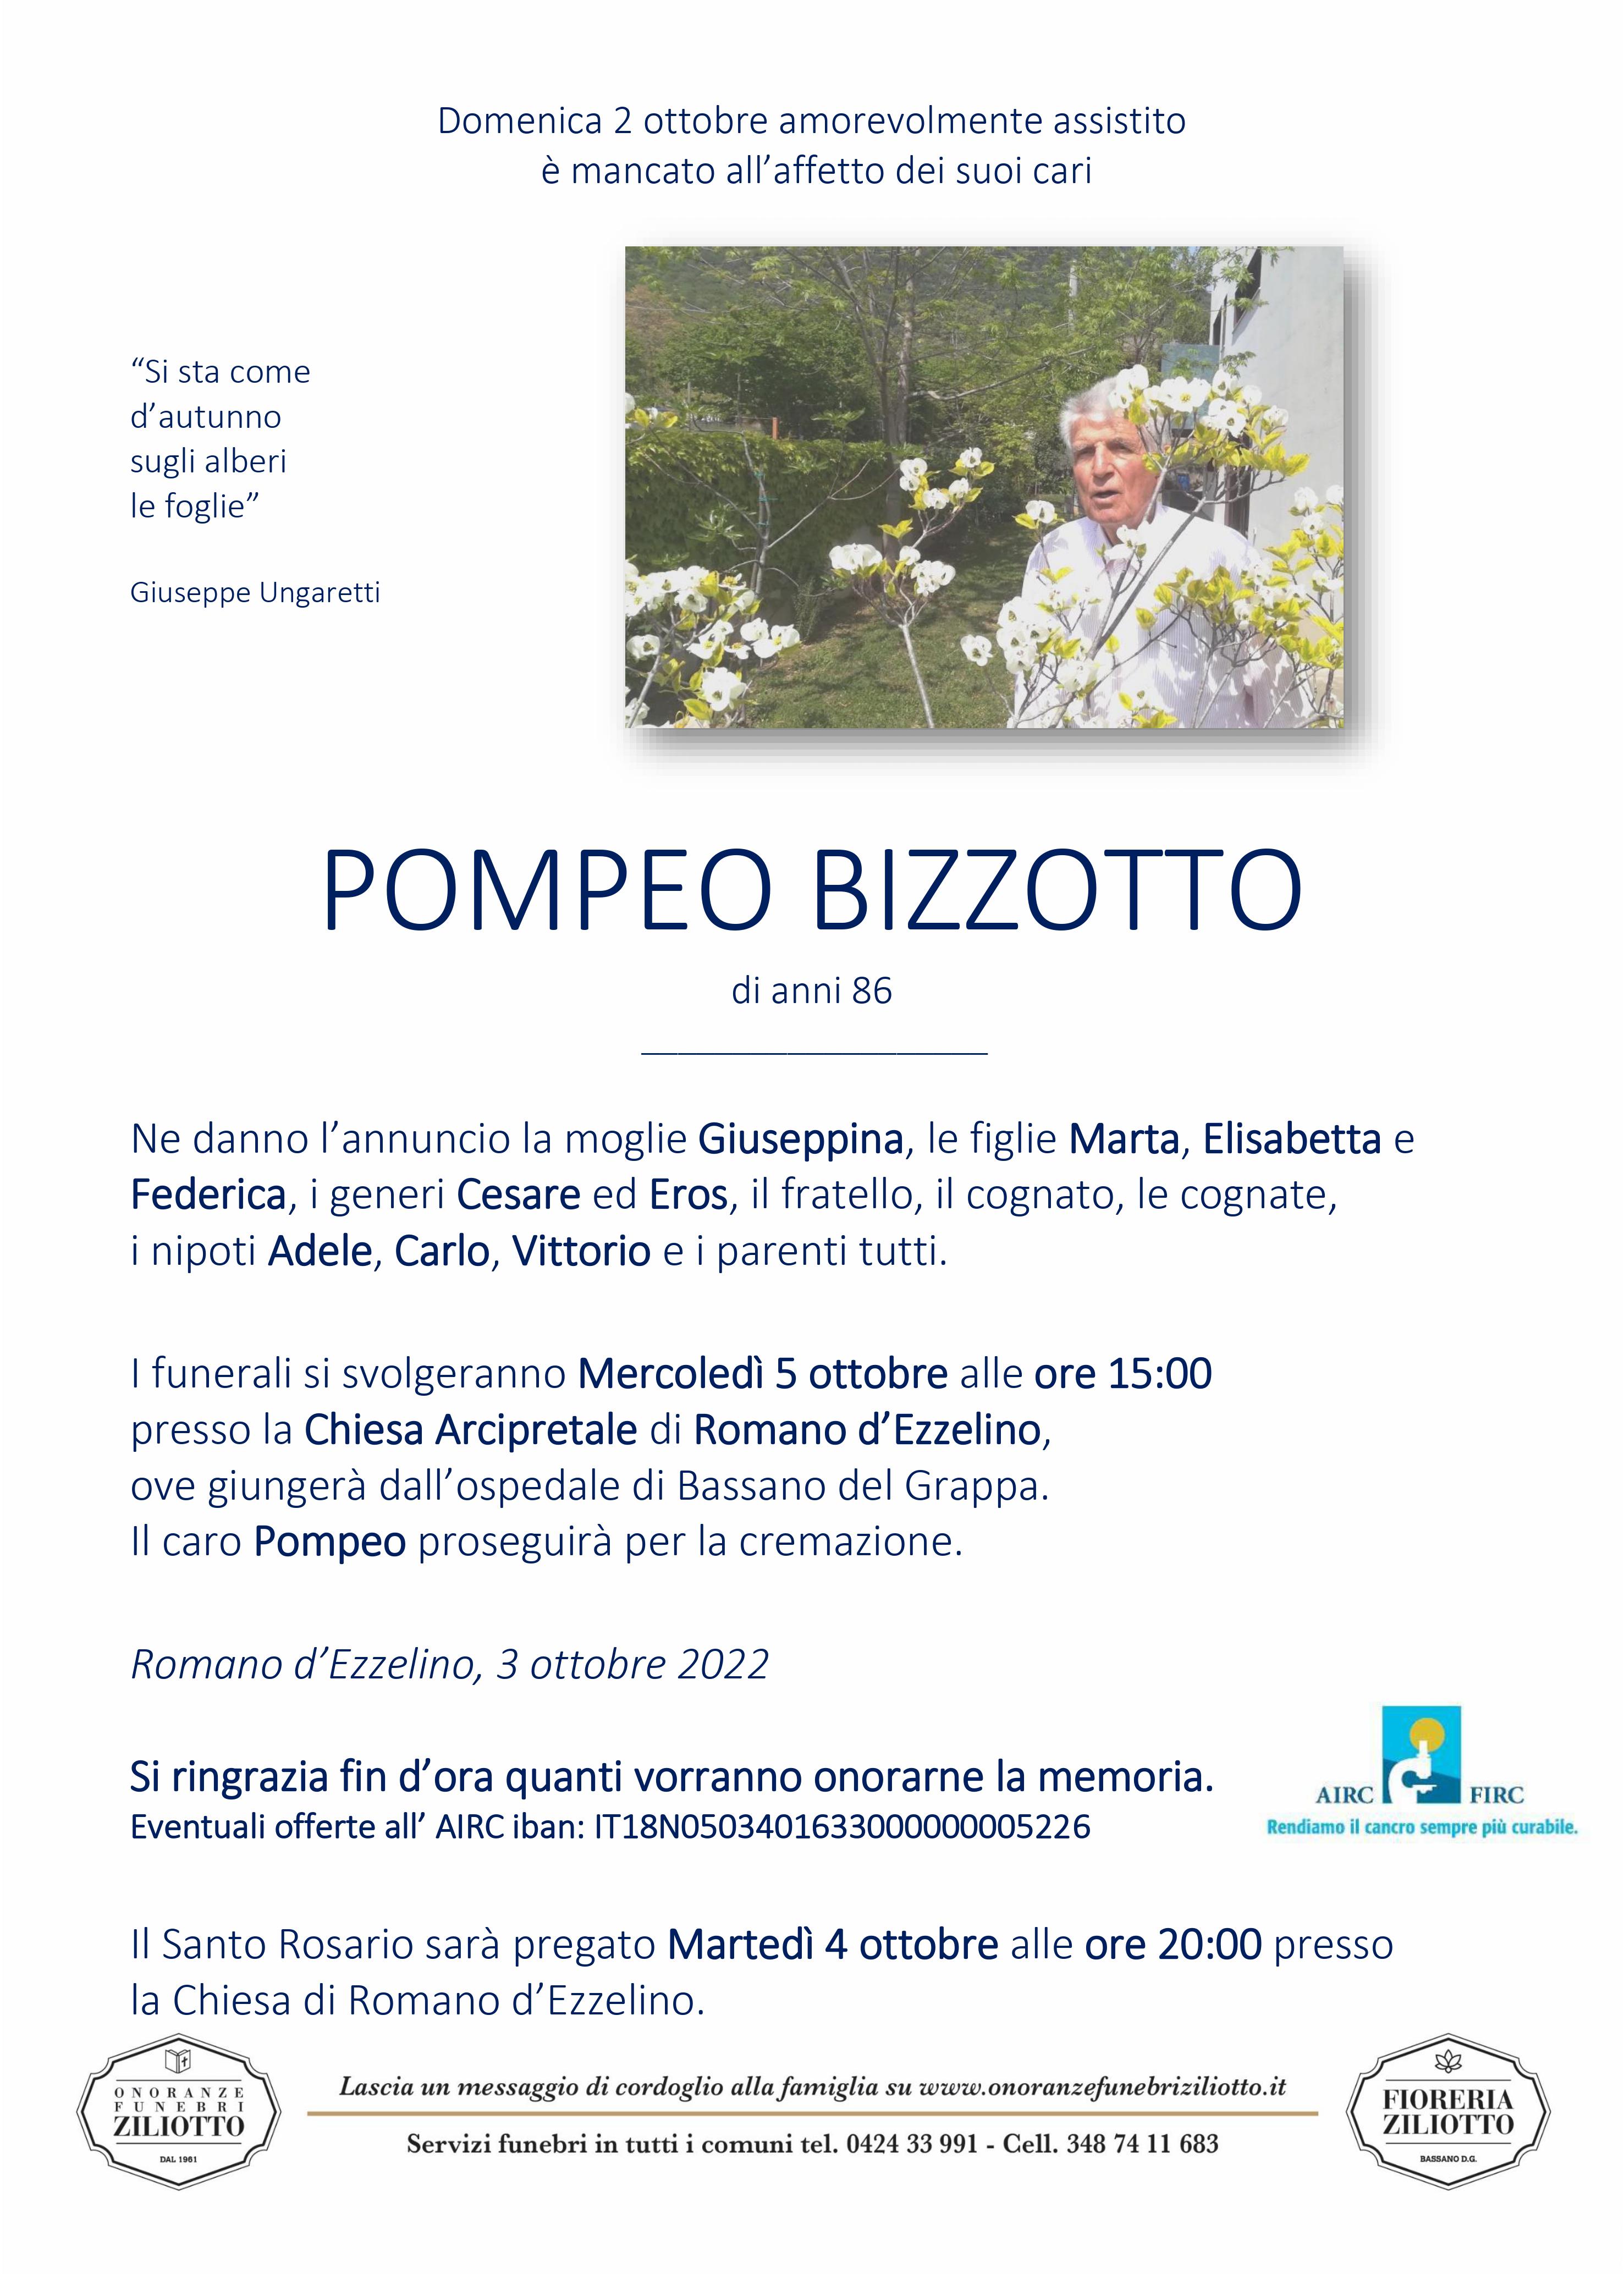 Pompeo Bizzotto - 86 anni - Romano d' Ezzelino